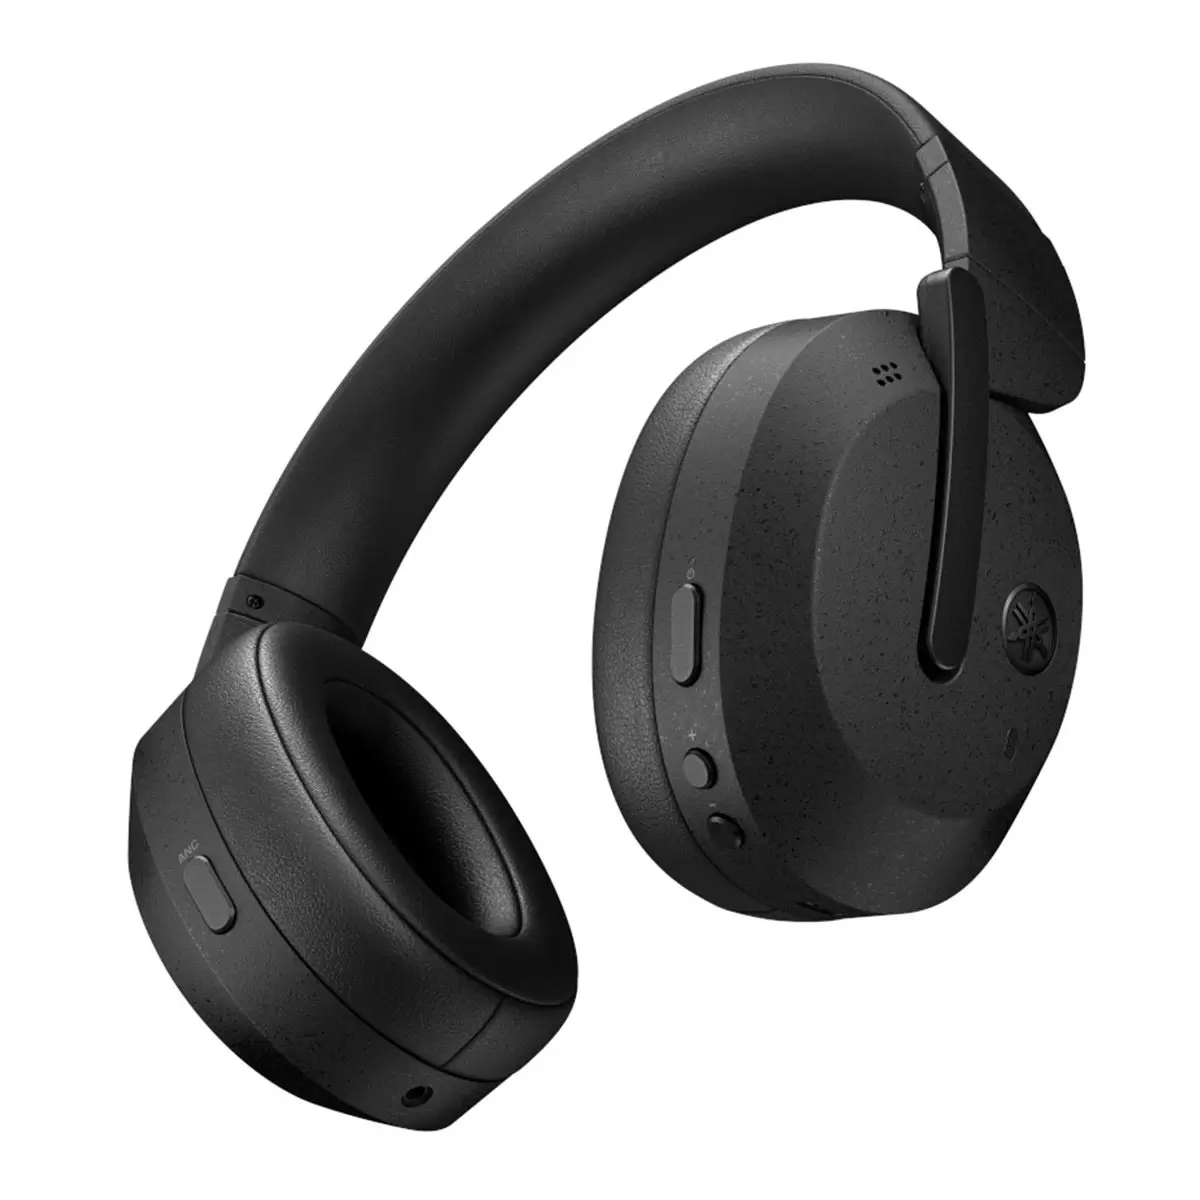 Yamaha 無線進階降噪耳罩耳機 YH-E700B 霧黑色